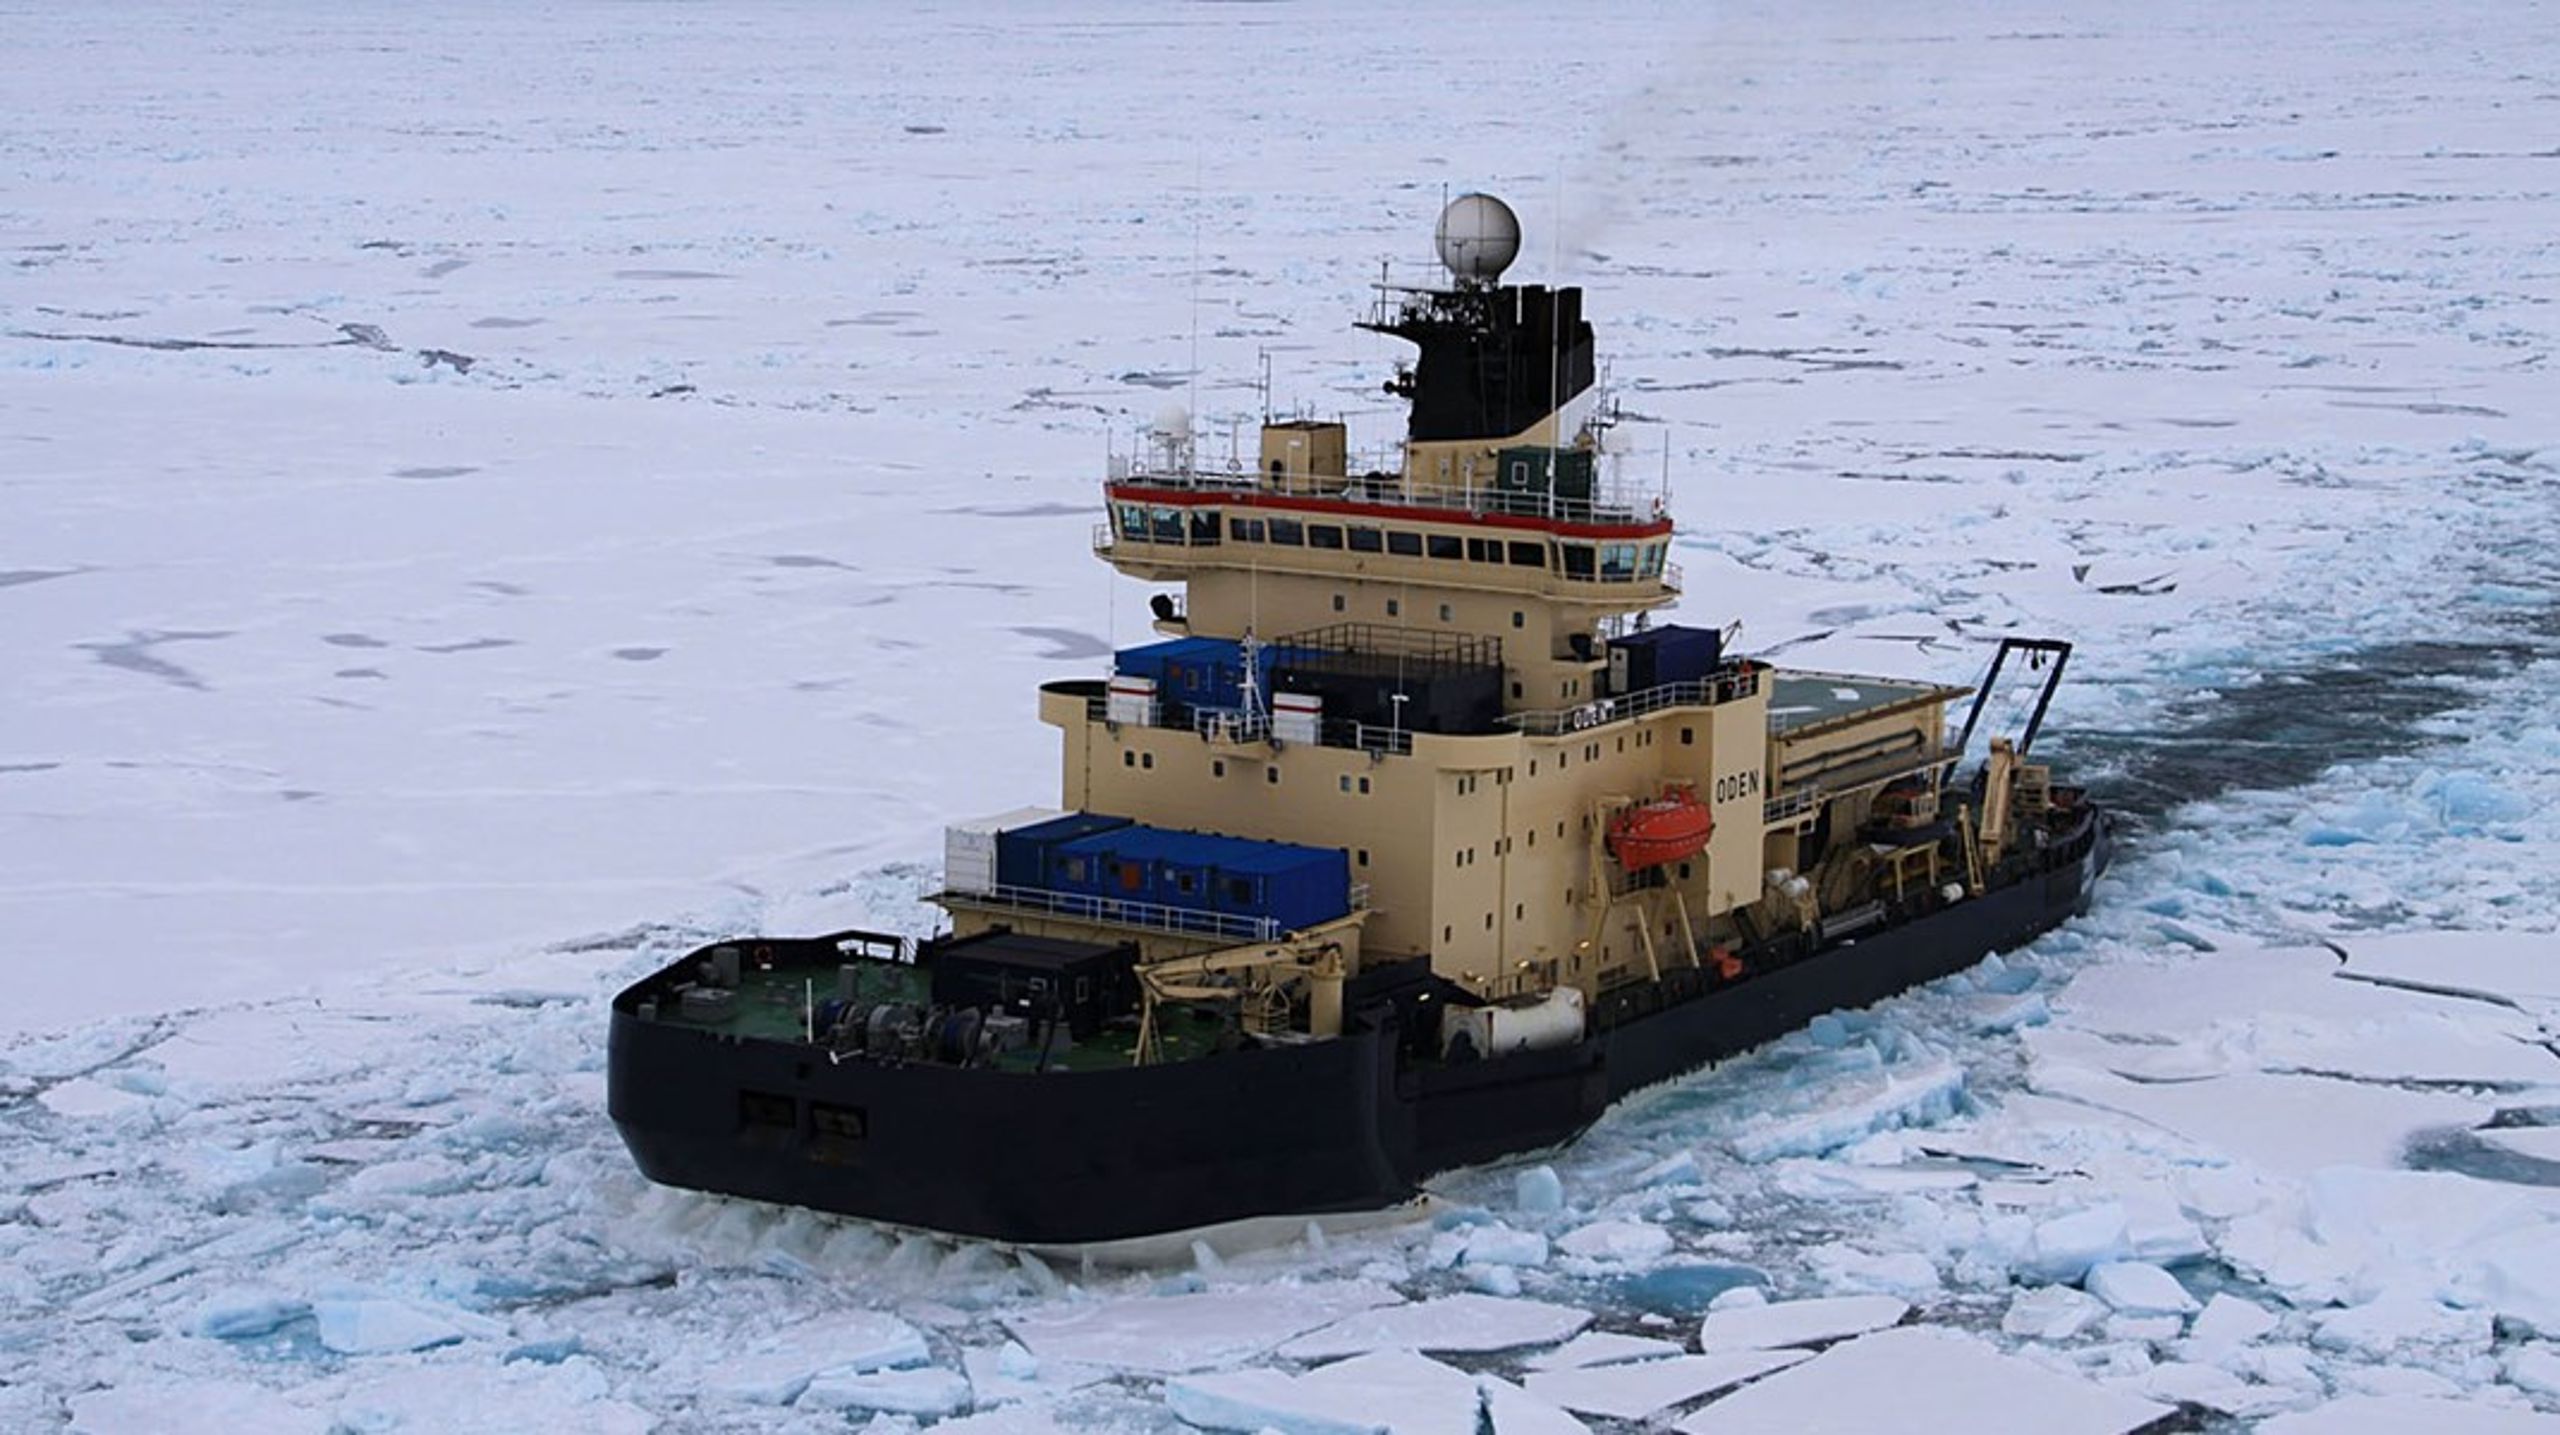 <div>"Oden er den stærkeste forsknings-isbryder i hele Det Frie Vesten," siger Katarina Gårdfeldt, direktør for det svenske polarforskningssekretariat.<br></div>